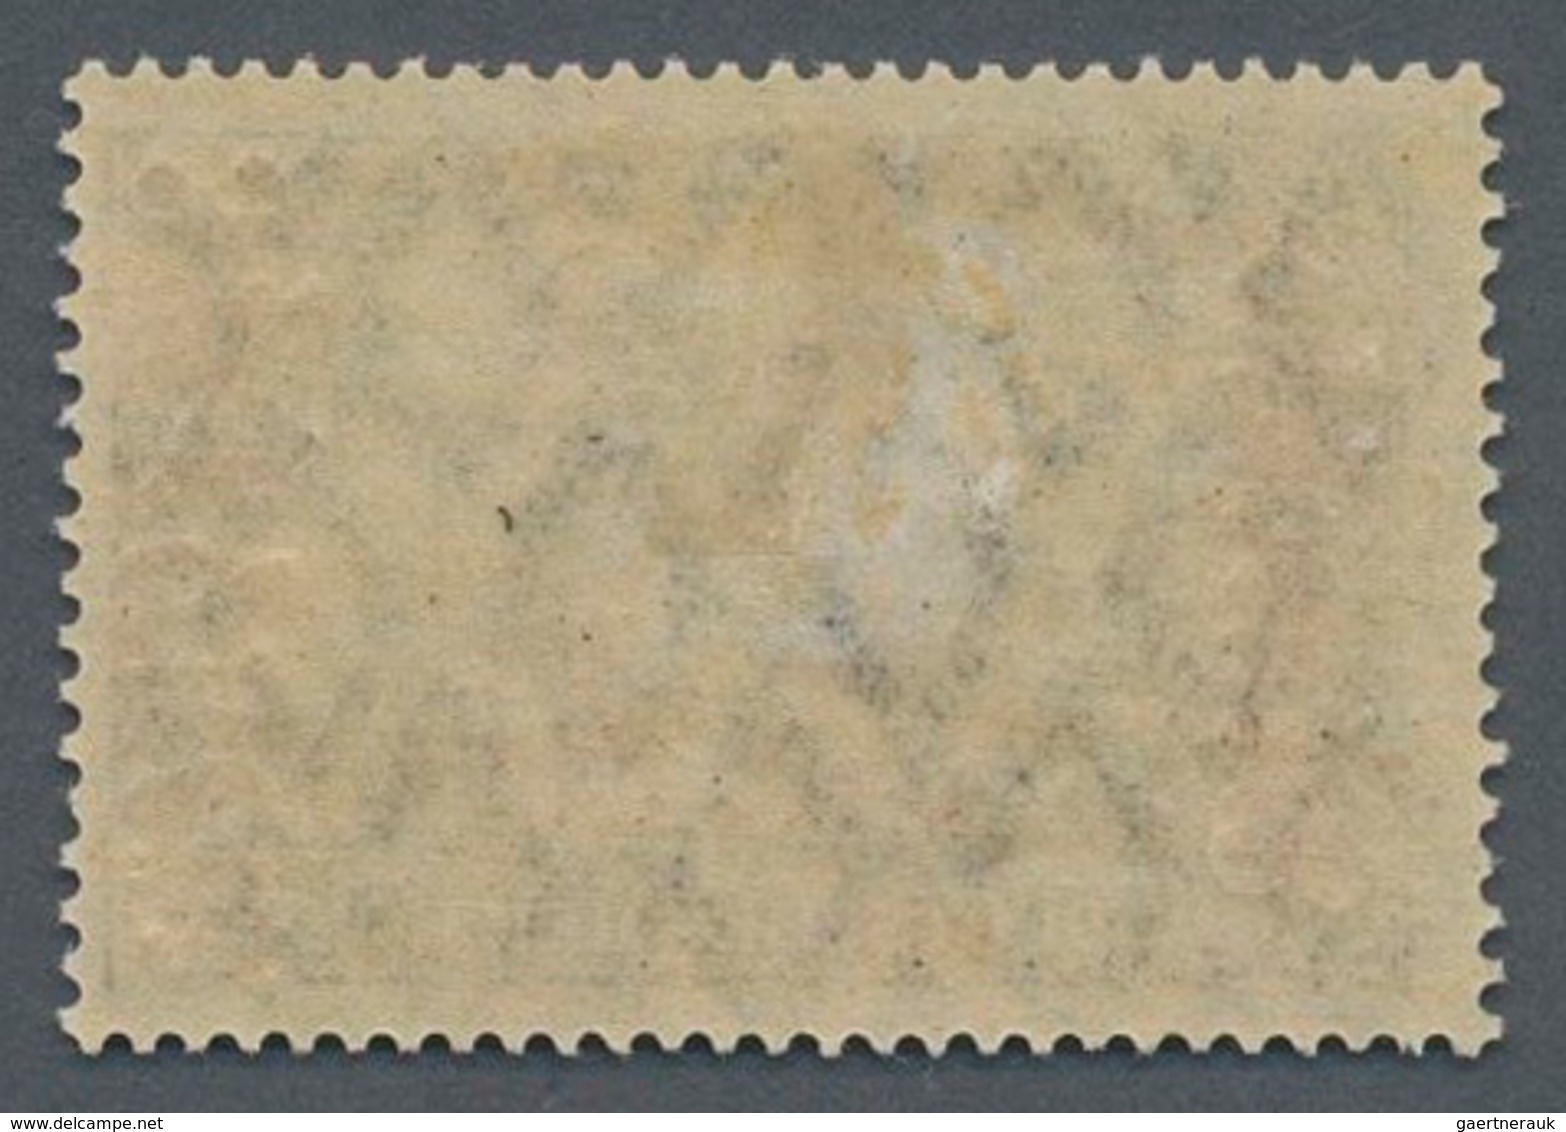 Deutsche Post In Marokko: 1911, 3 Mark Mit Wasserzeichen 1, Zähnung 26:17, Mit Wertaufdruck In Der S - Morocco (offices)